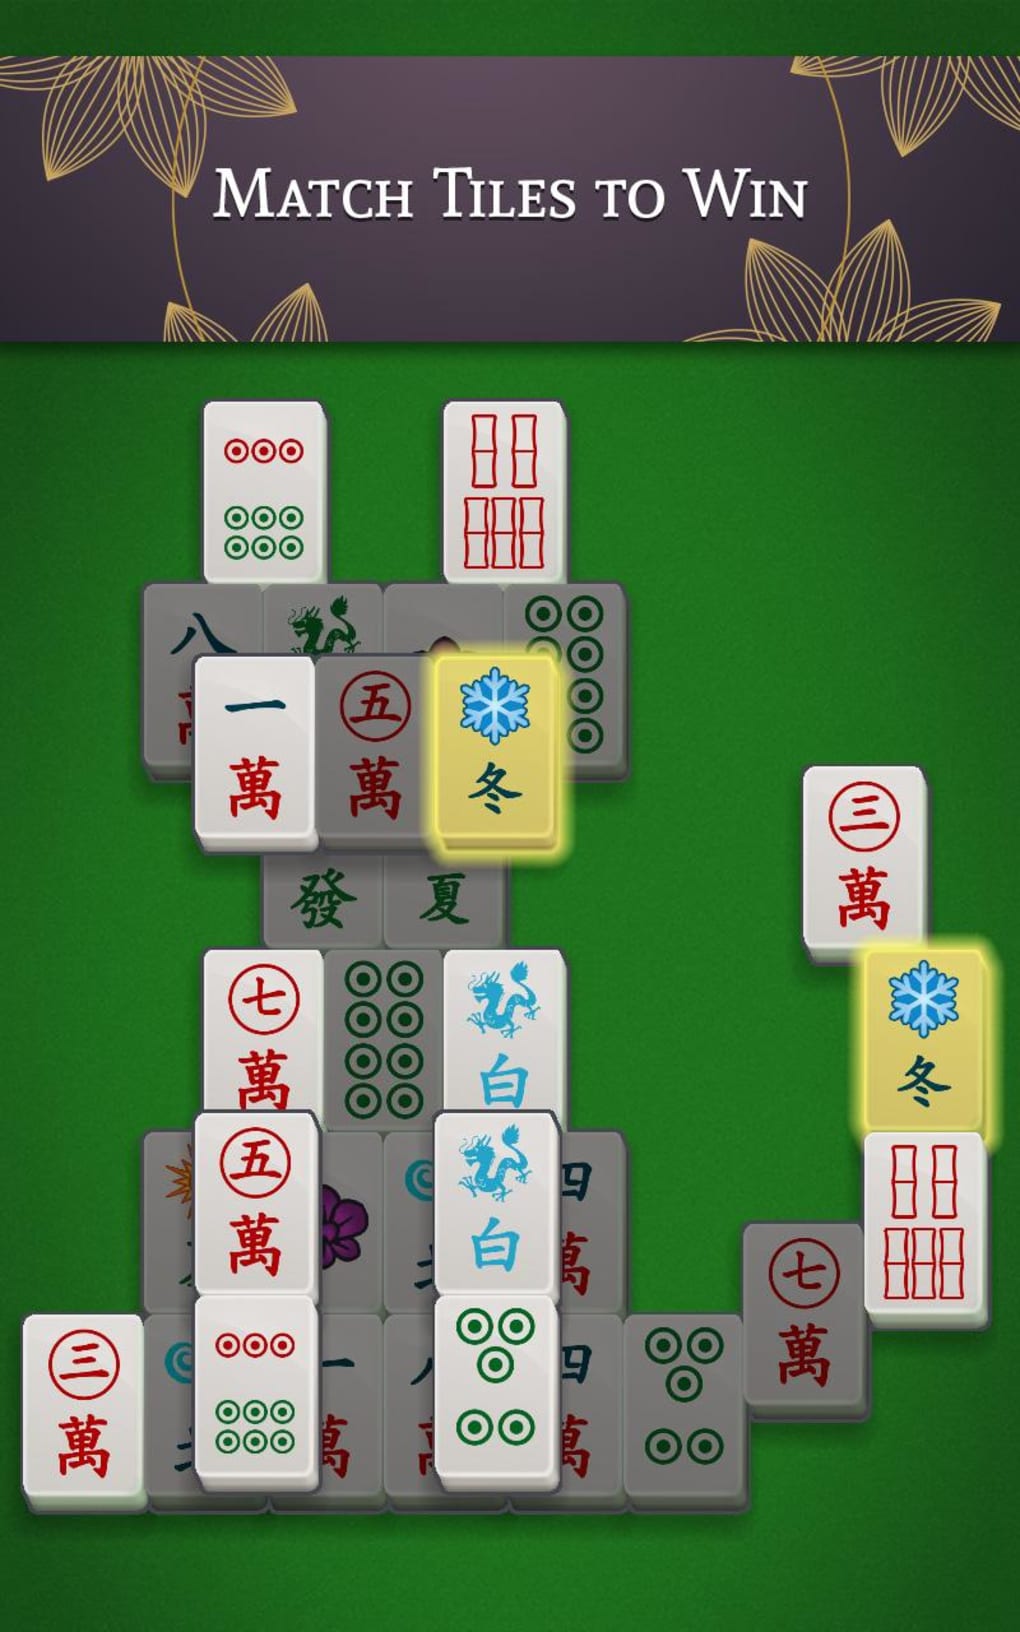 Mahjong Solitaire Refresh, Aplicações de download da Nintendo Switch, Jogos